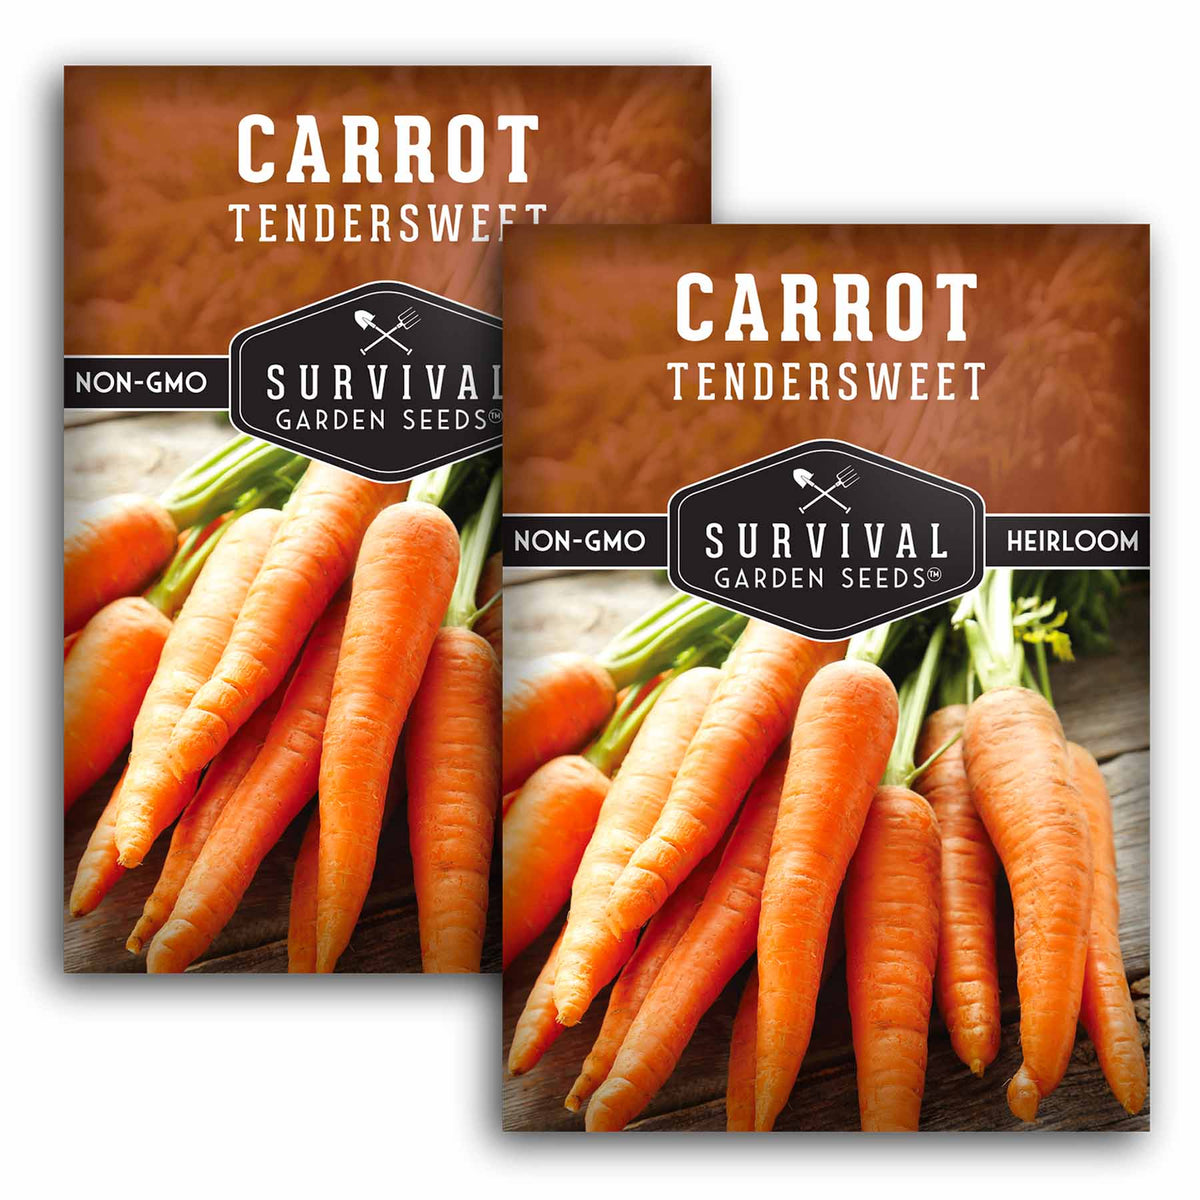 2 Packets of Tendersweet Carrot seeds